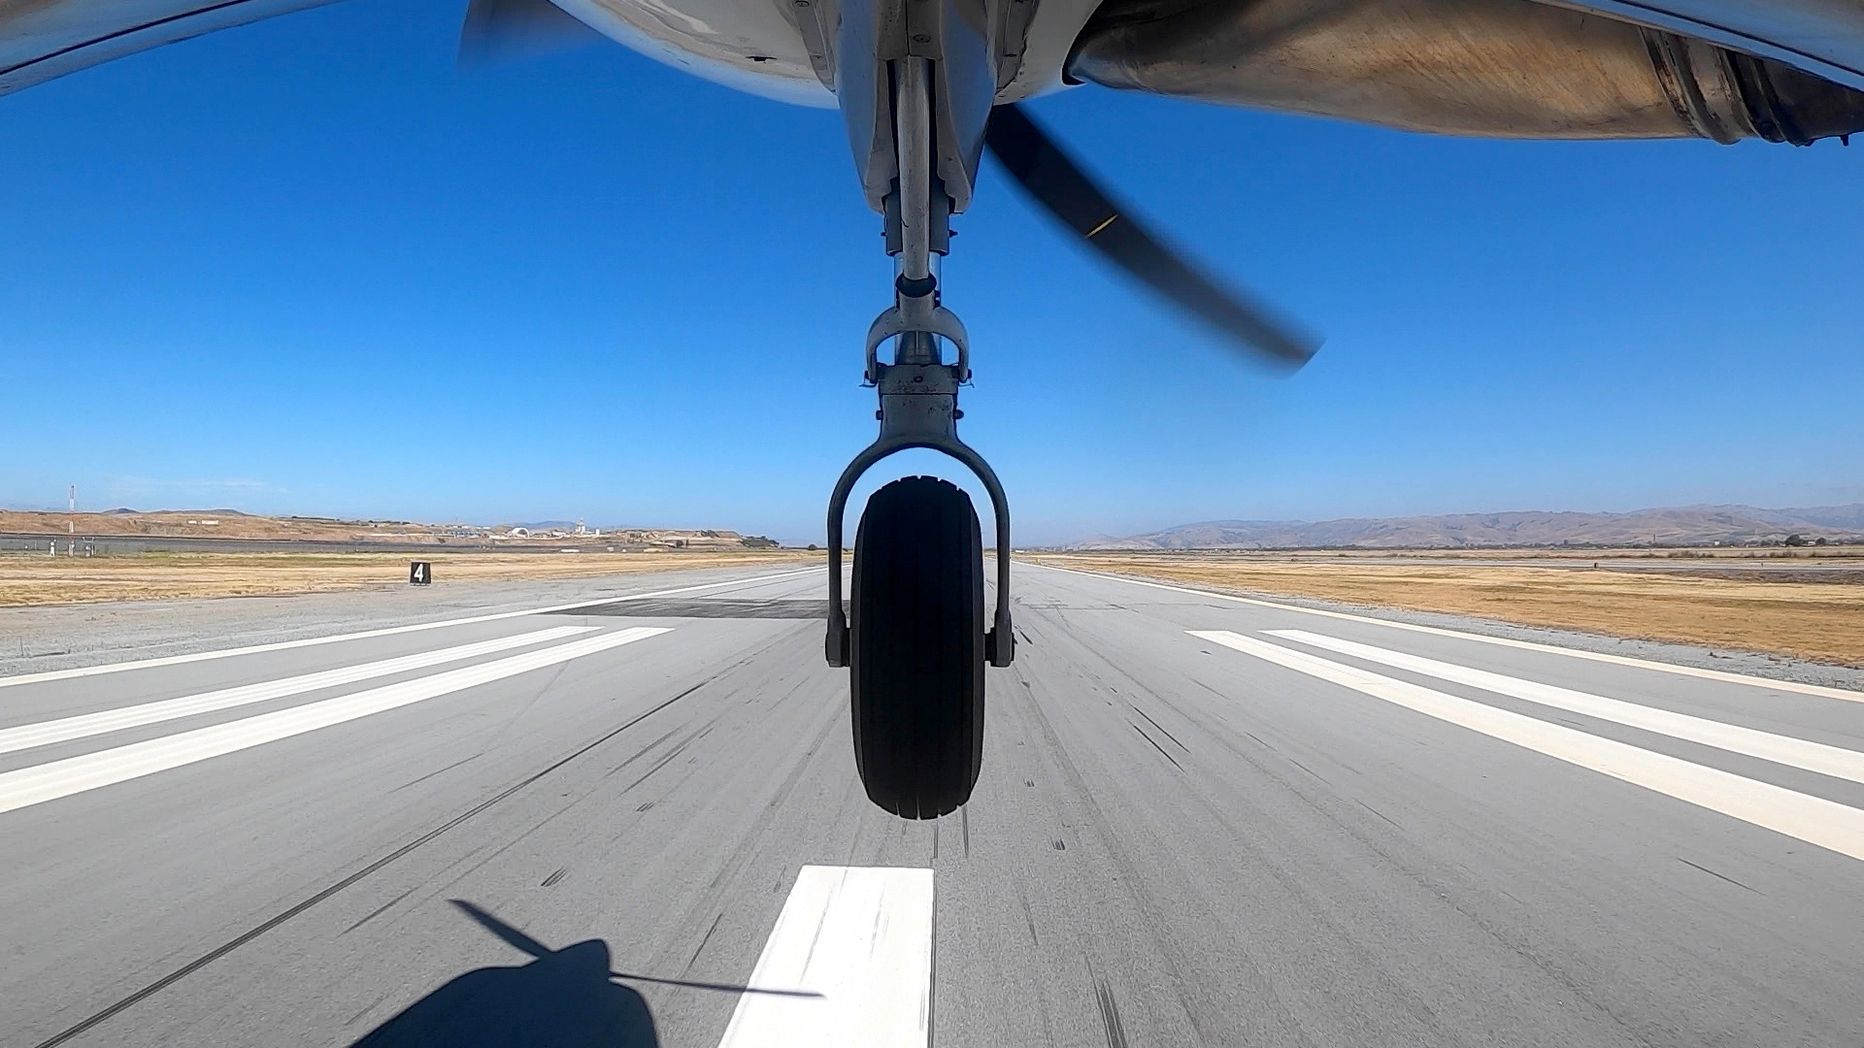 Cessna õhku tõusmas. Pilt on illustreeriv